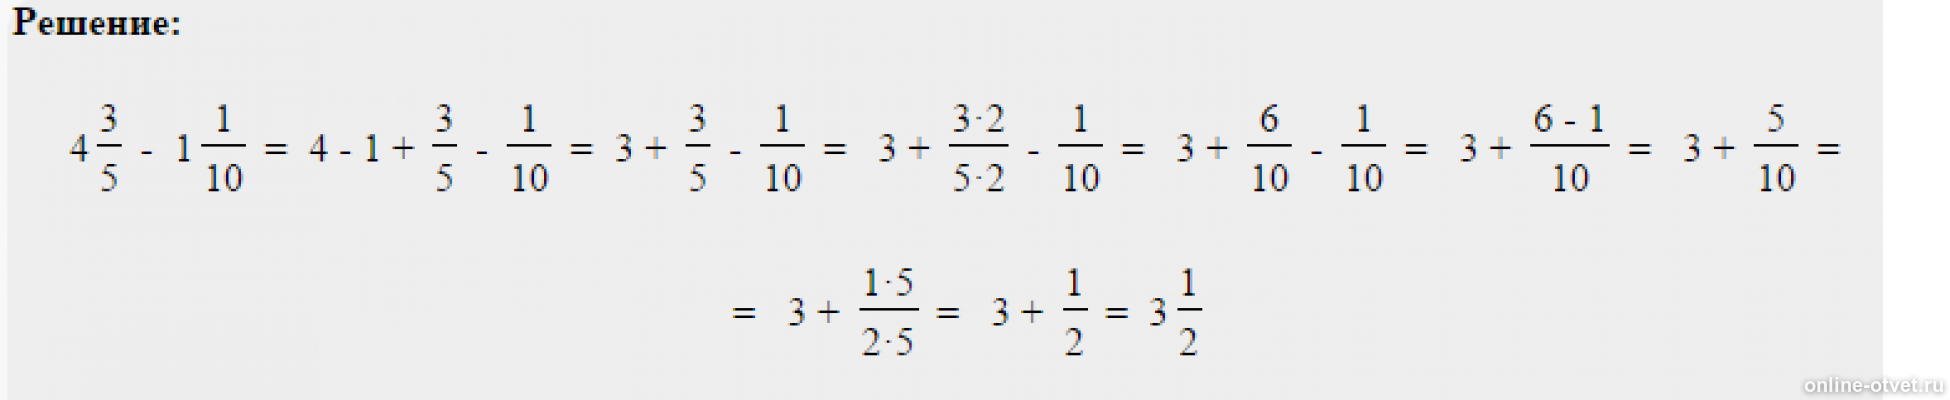 Как решить пример 3 4 5 7. Реши пример 4 целых минус 1 целая 1/3. Решить пример 5 минус 2 целых 1/2. Реши пример 7 целых минус 4 целых 4/5. Решить пример 3 целых минус 1/3.